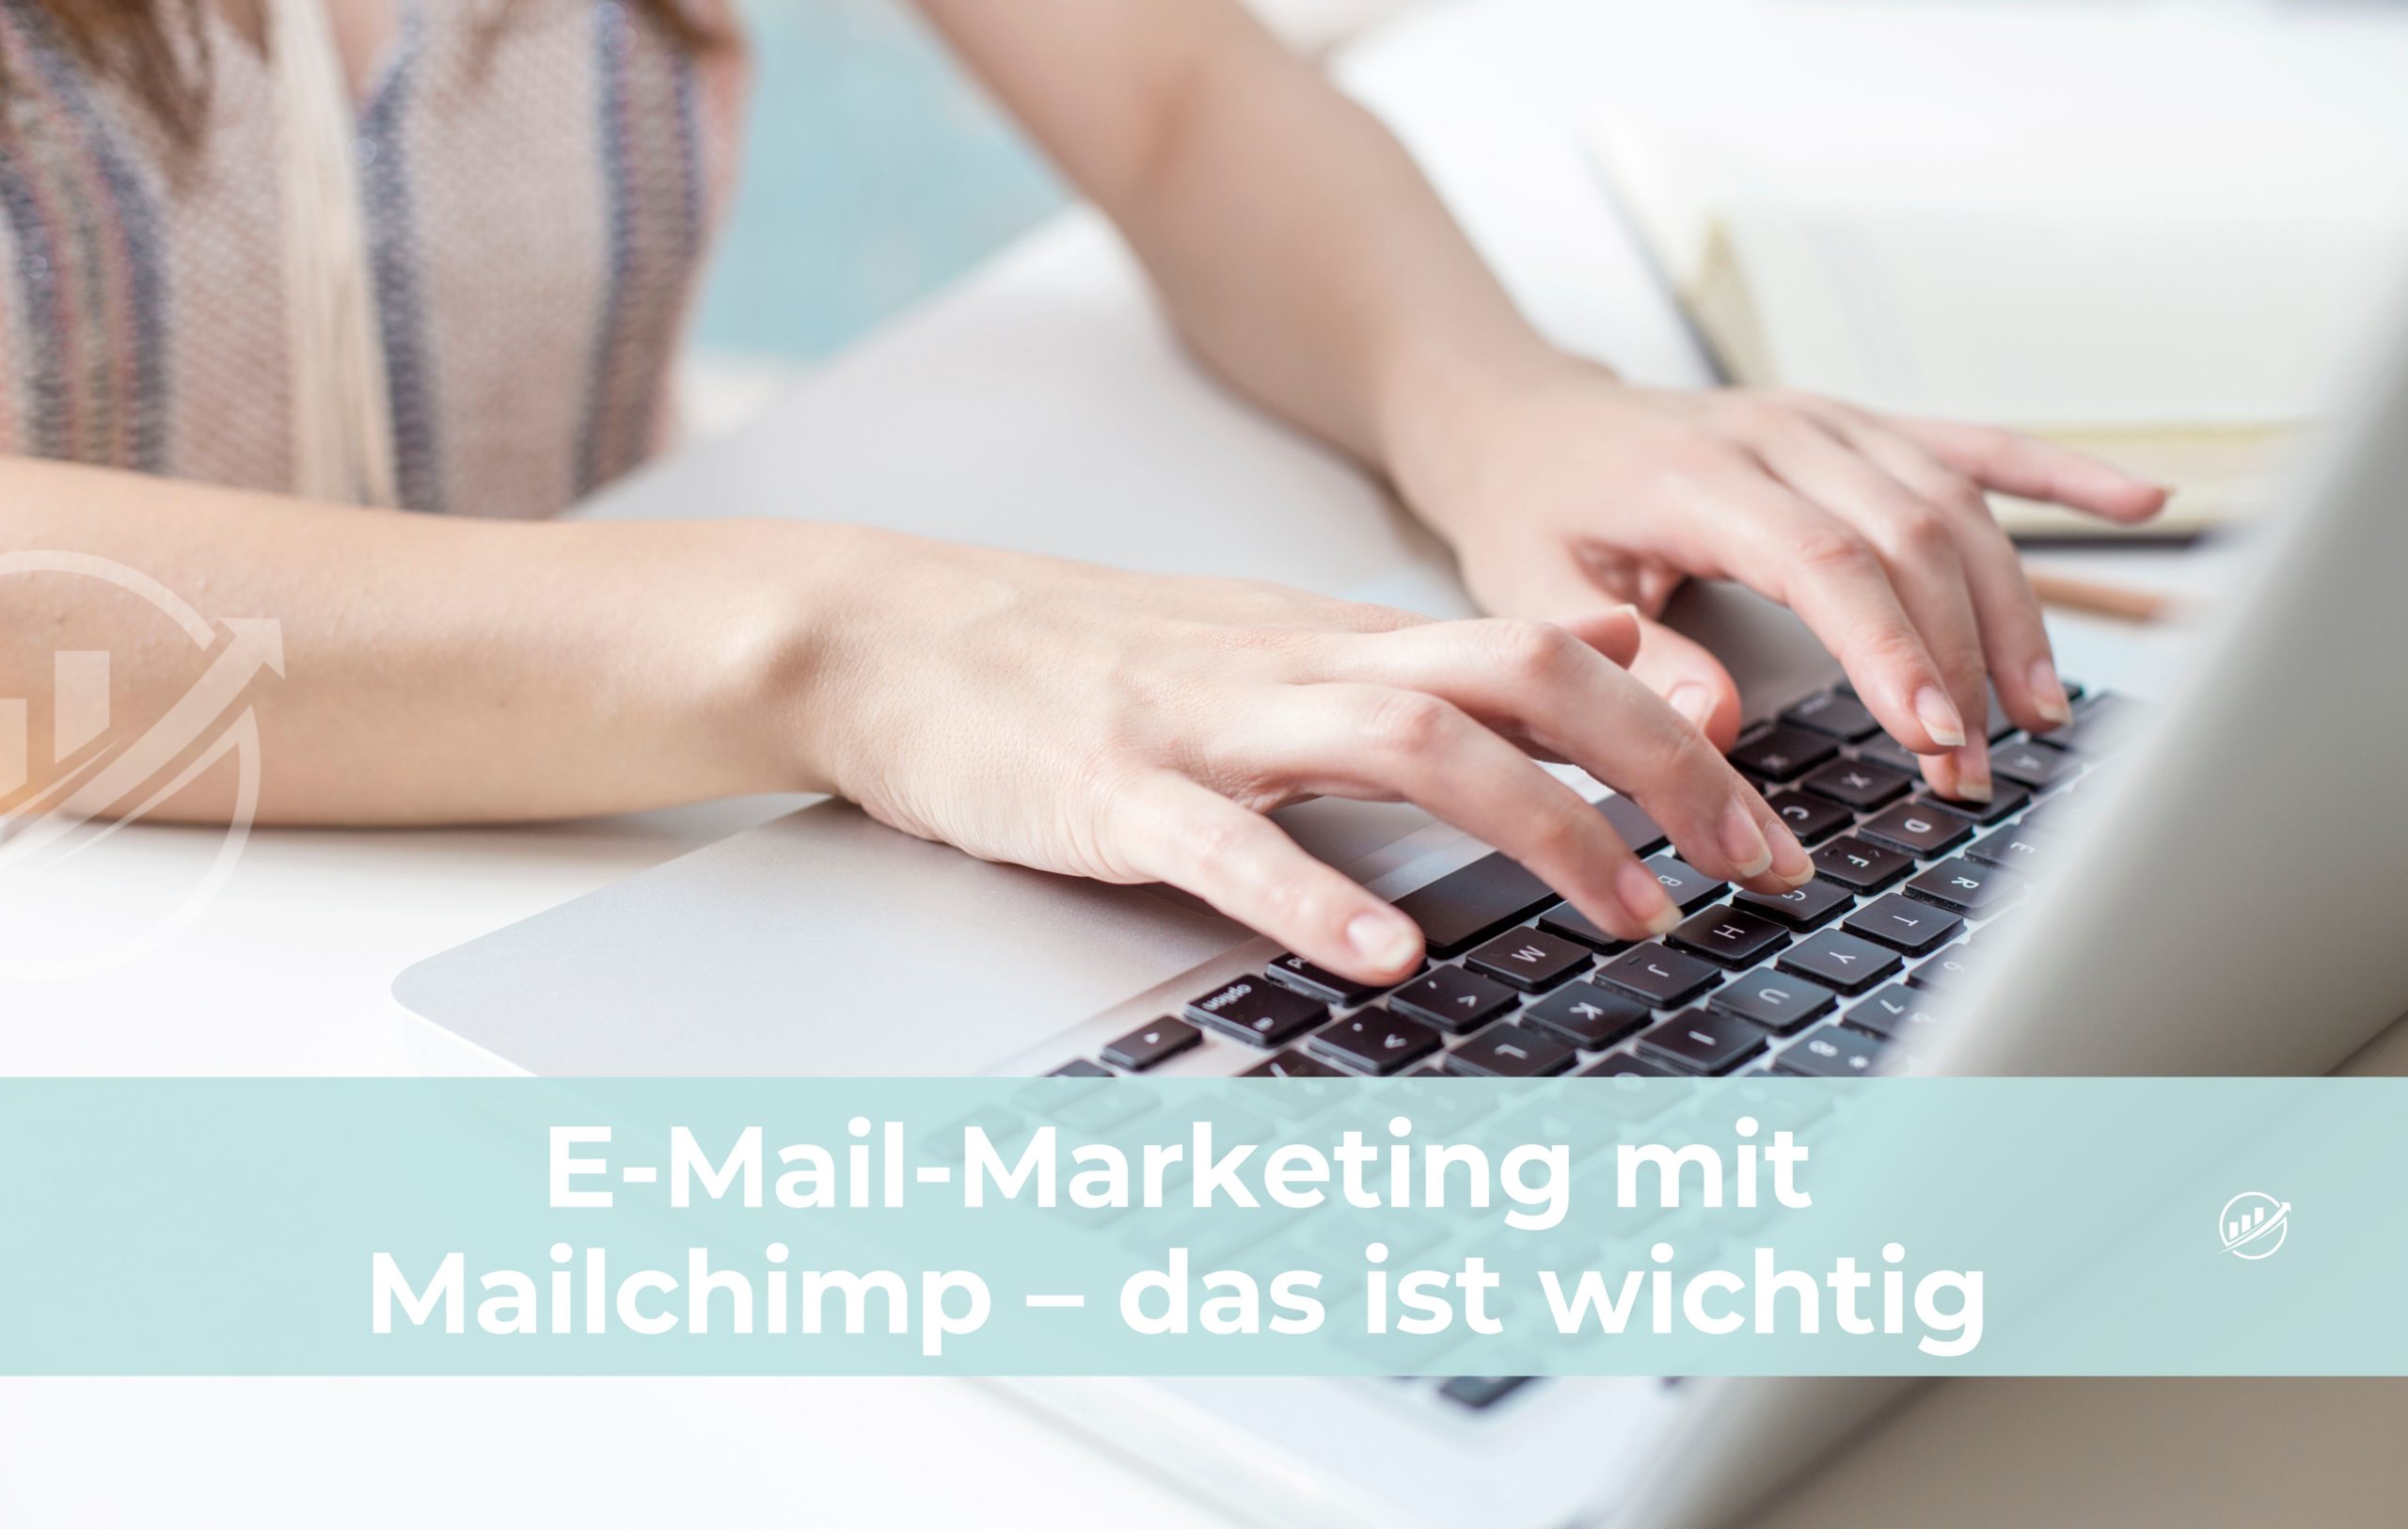 E-Mail-Marketing mit Mailchimp – das ist wichtig